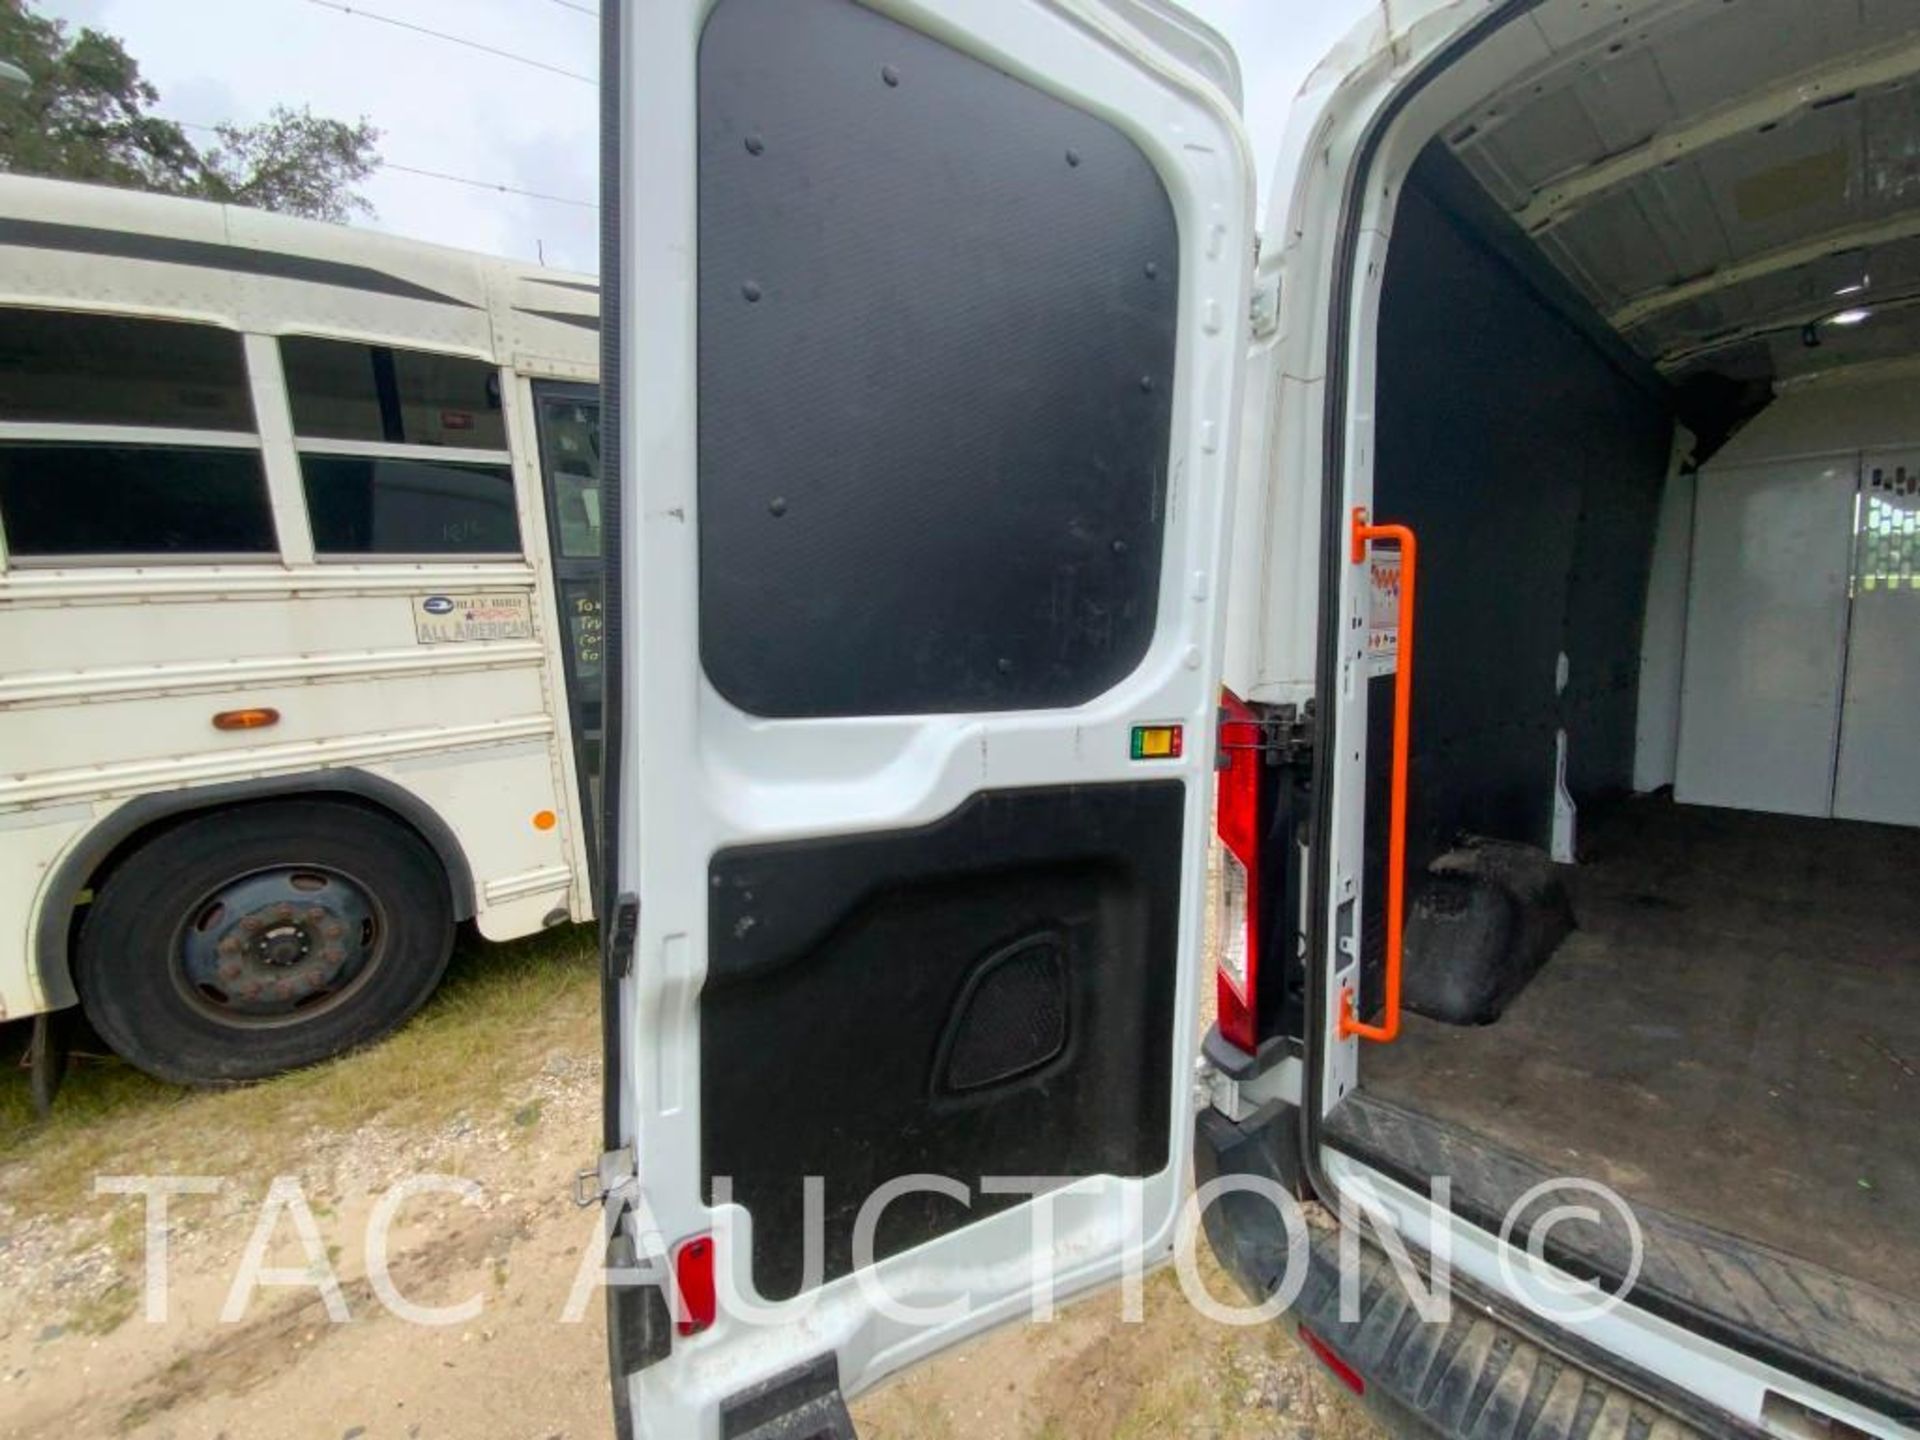 2019 Ford Transit 150 Cargo Van - Image 23 of 54